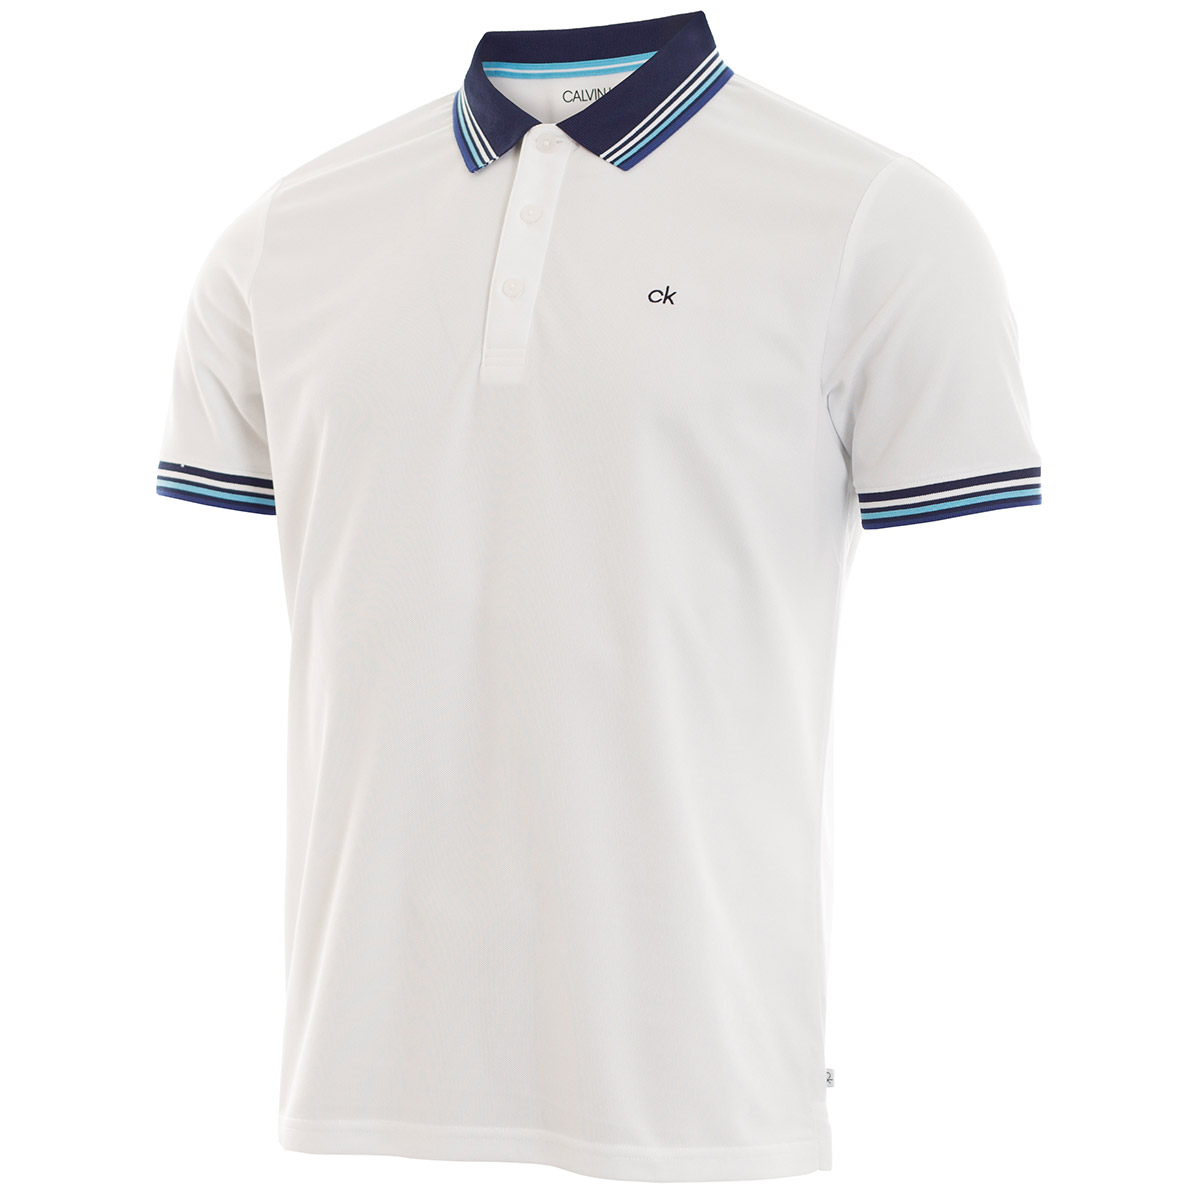 Miinto Jongens Kleding Tops & Shirts Shirts Poloshirts Polo 